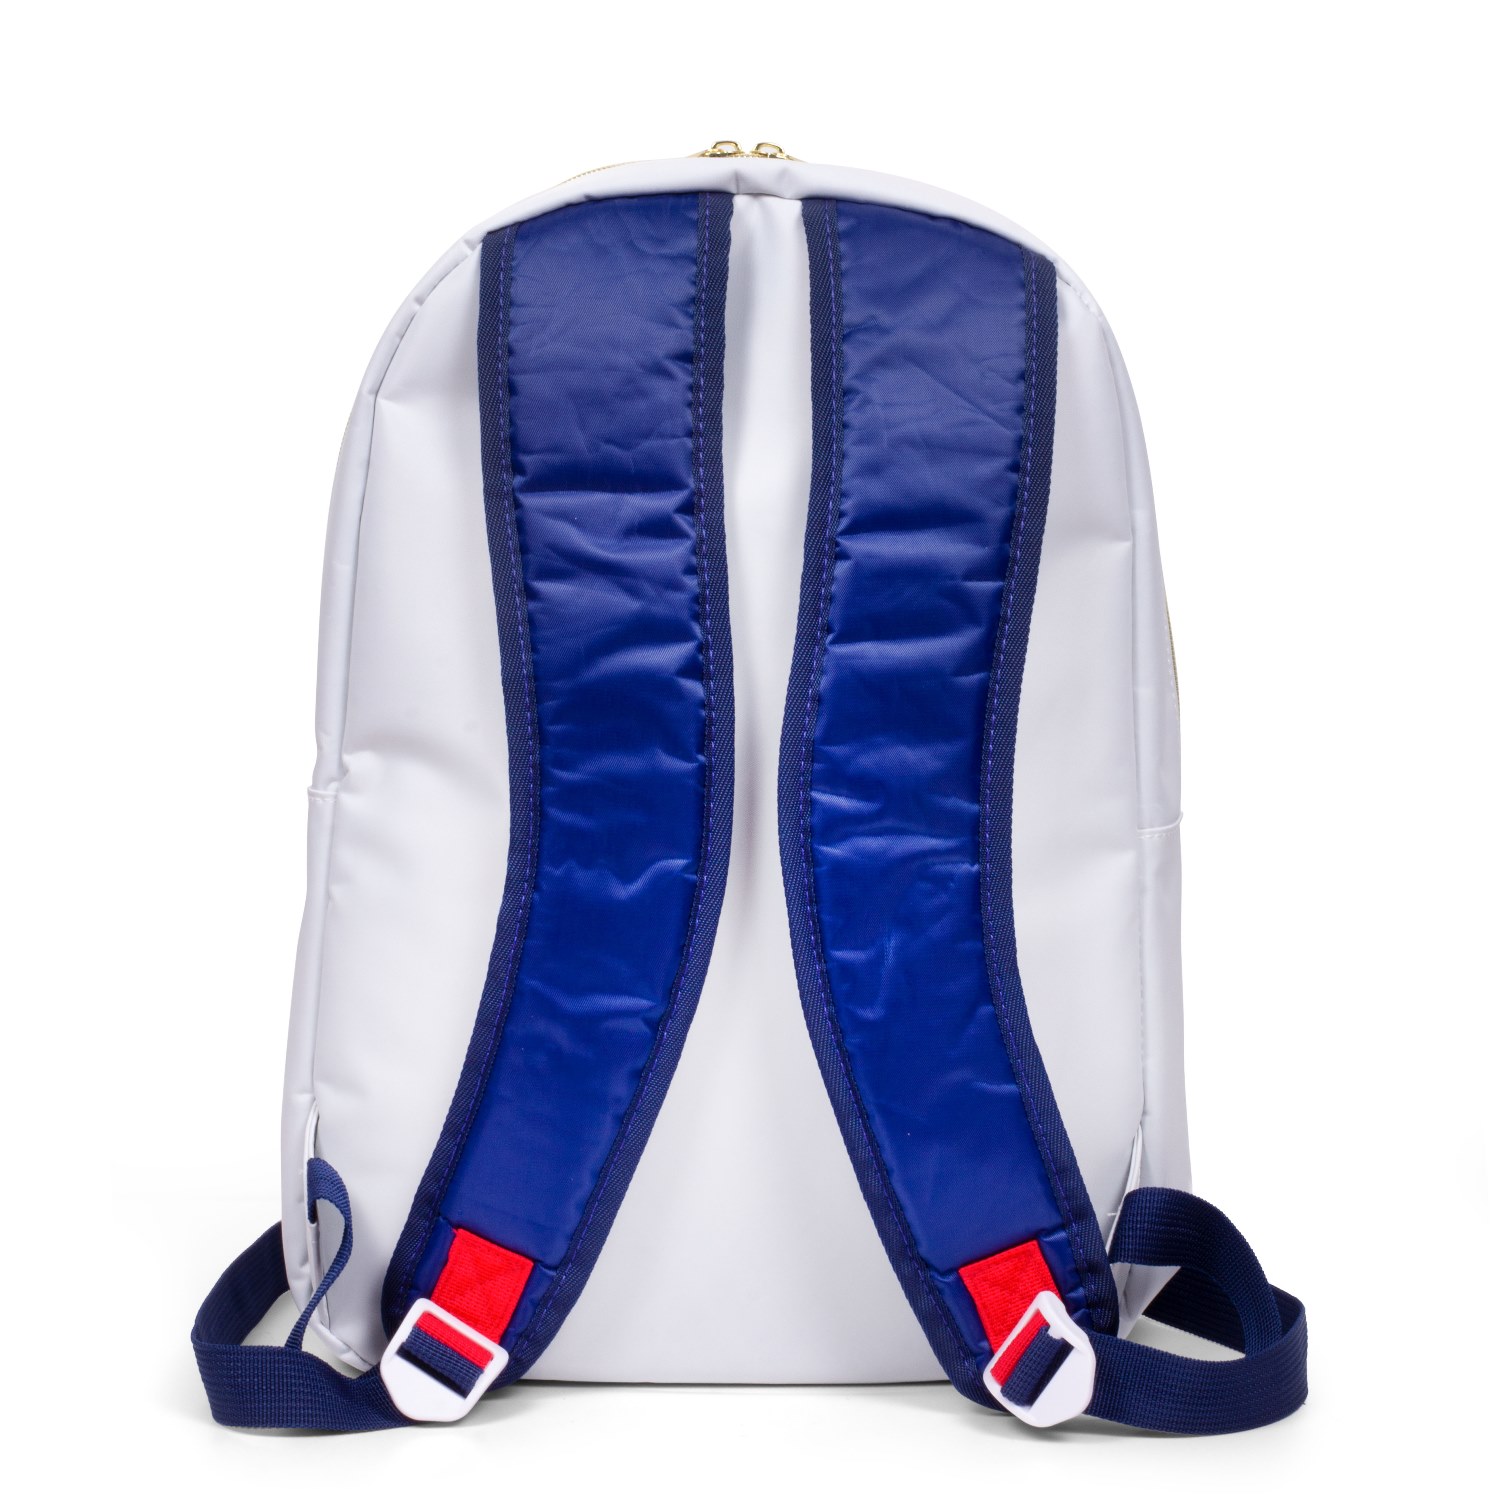 NASA Rucksack "Backpack" weiß